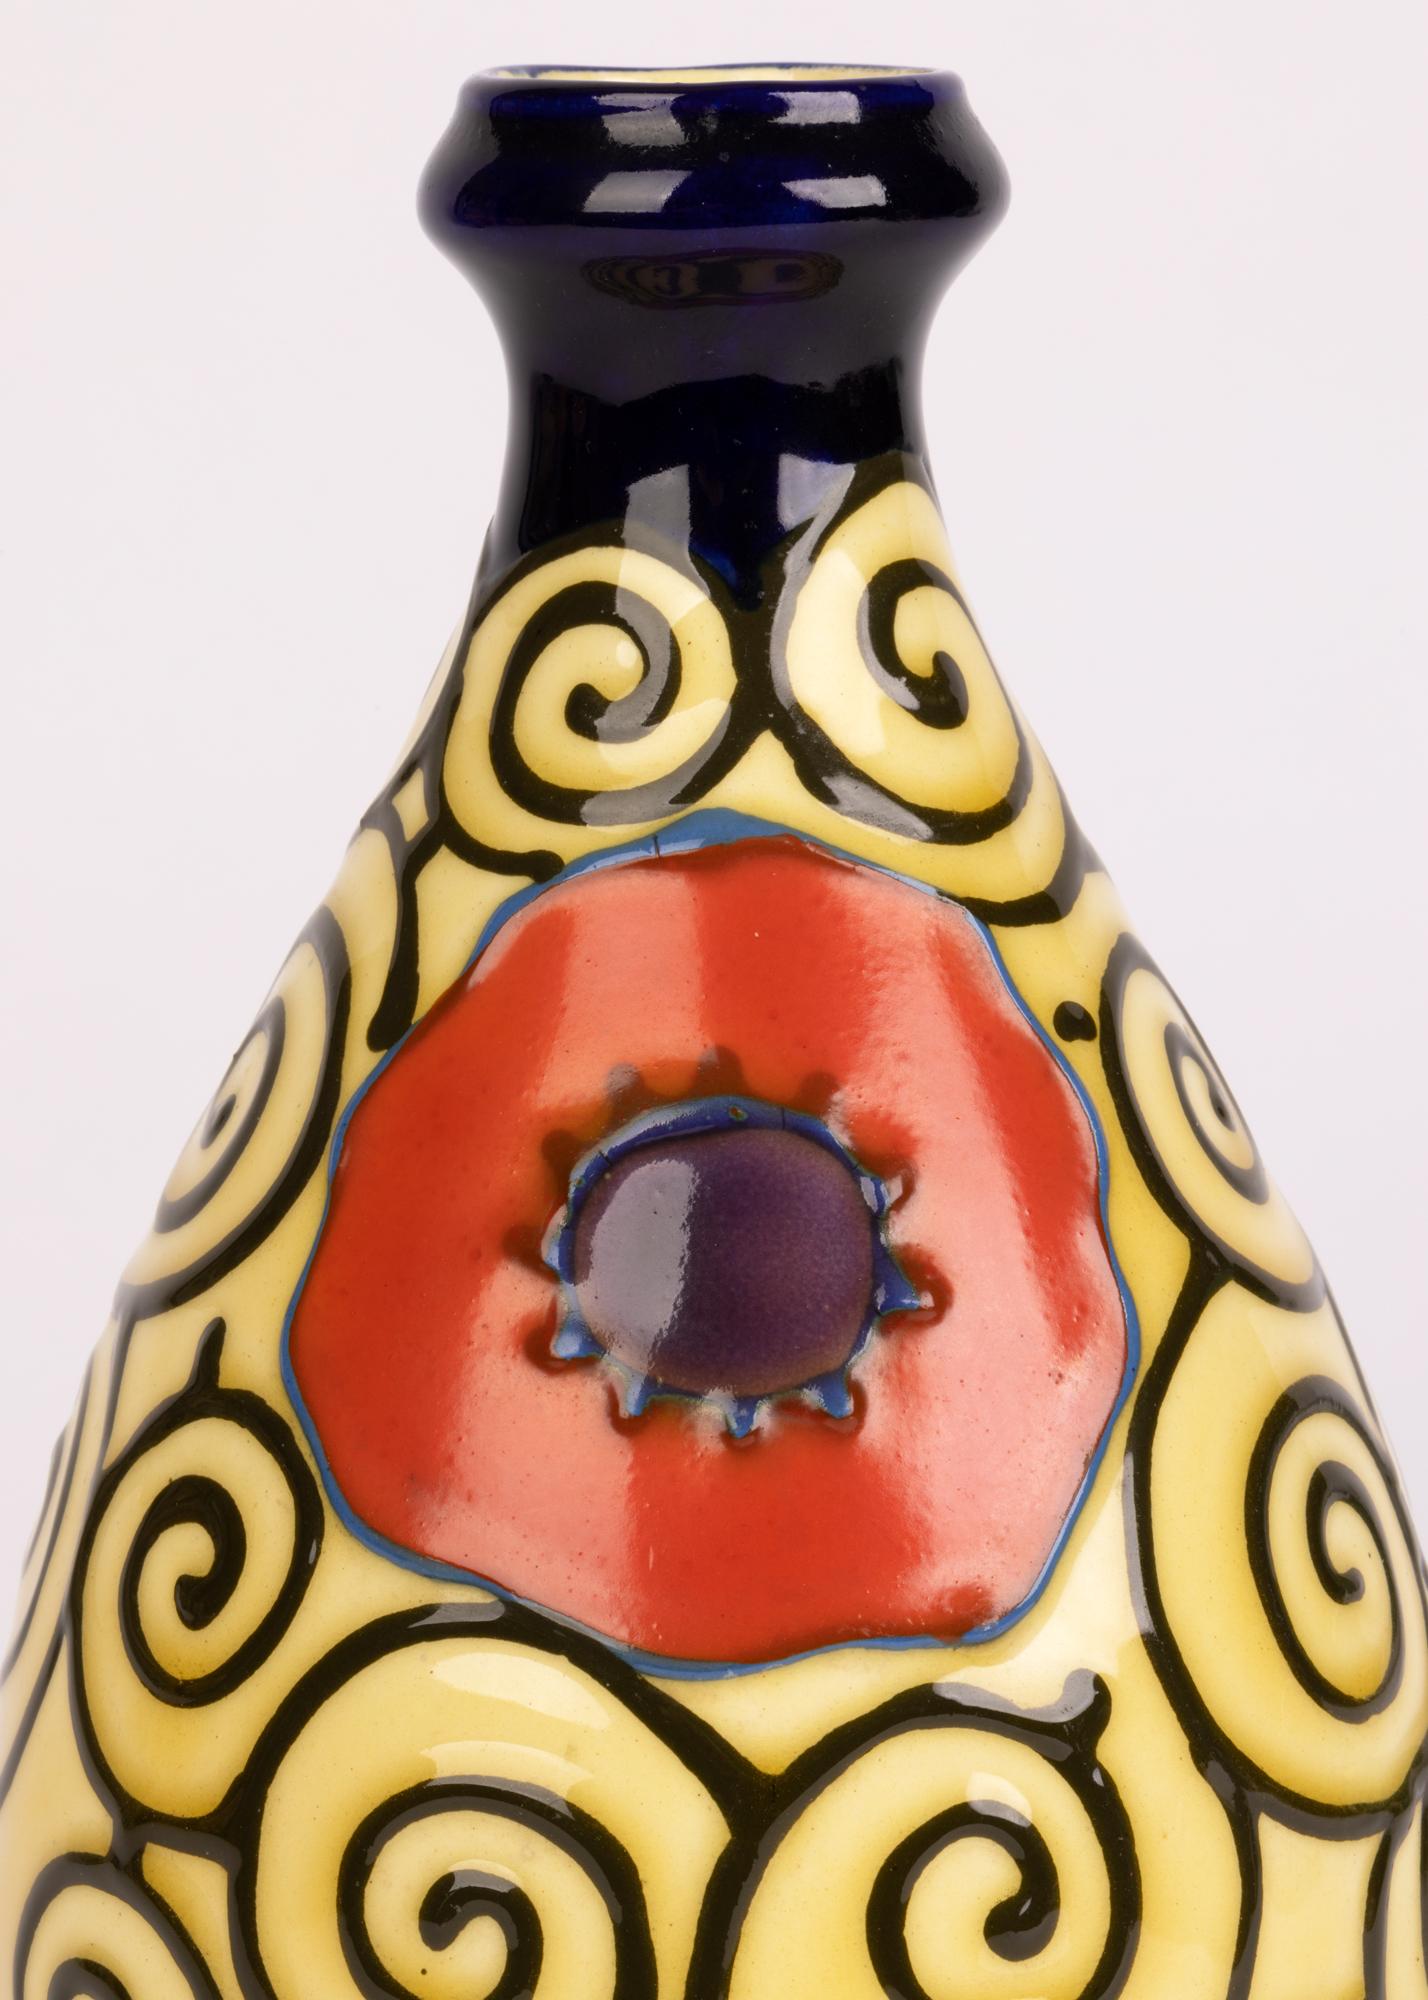 Eine stilvolle kontinentale, möglicherweise österreichische Vase aus Töpferwaren im Art-déco-Stil, die mit Mohnblumen in einem röhrenförmigen Schneckenmuster verziert ist. Die leicht getönte birnenförmige Vase steht auf einem schmalen, runden,